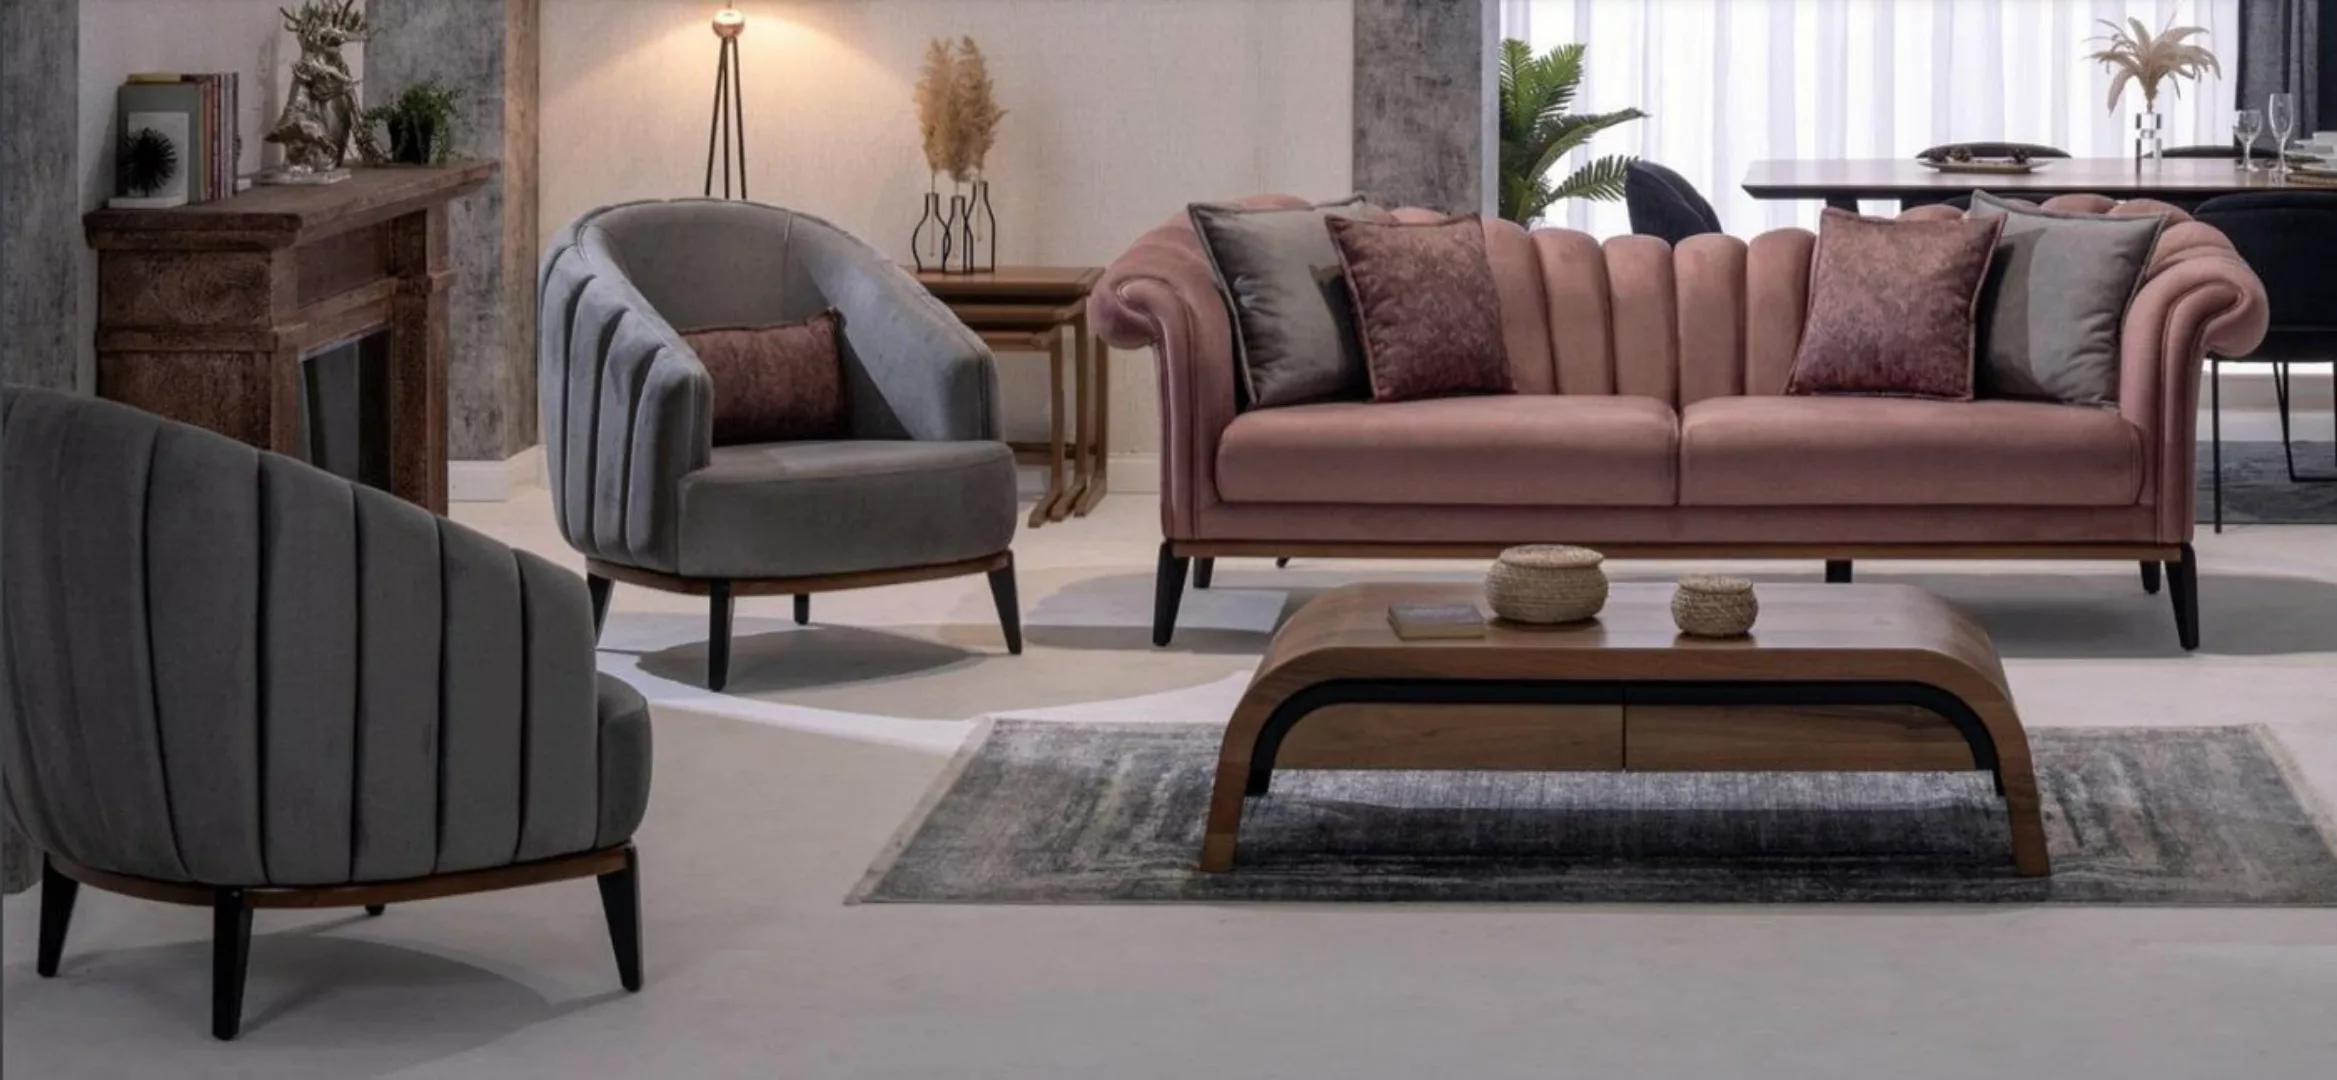 JVmoebel Sofa Sofagarnitur 311 Sitzer Set Design Sofa Polster Couchen Couch günstig online kaufen